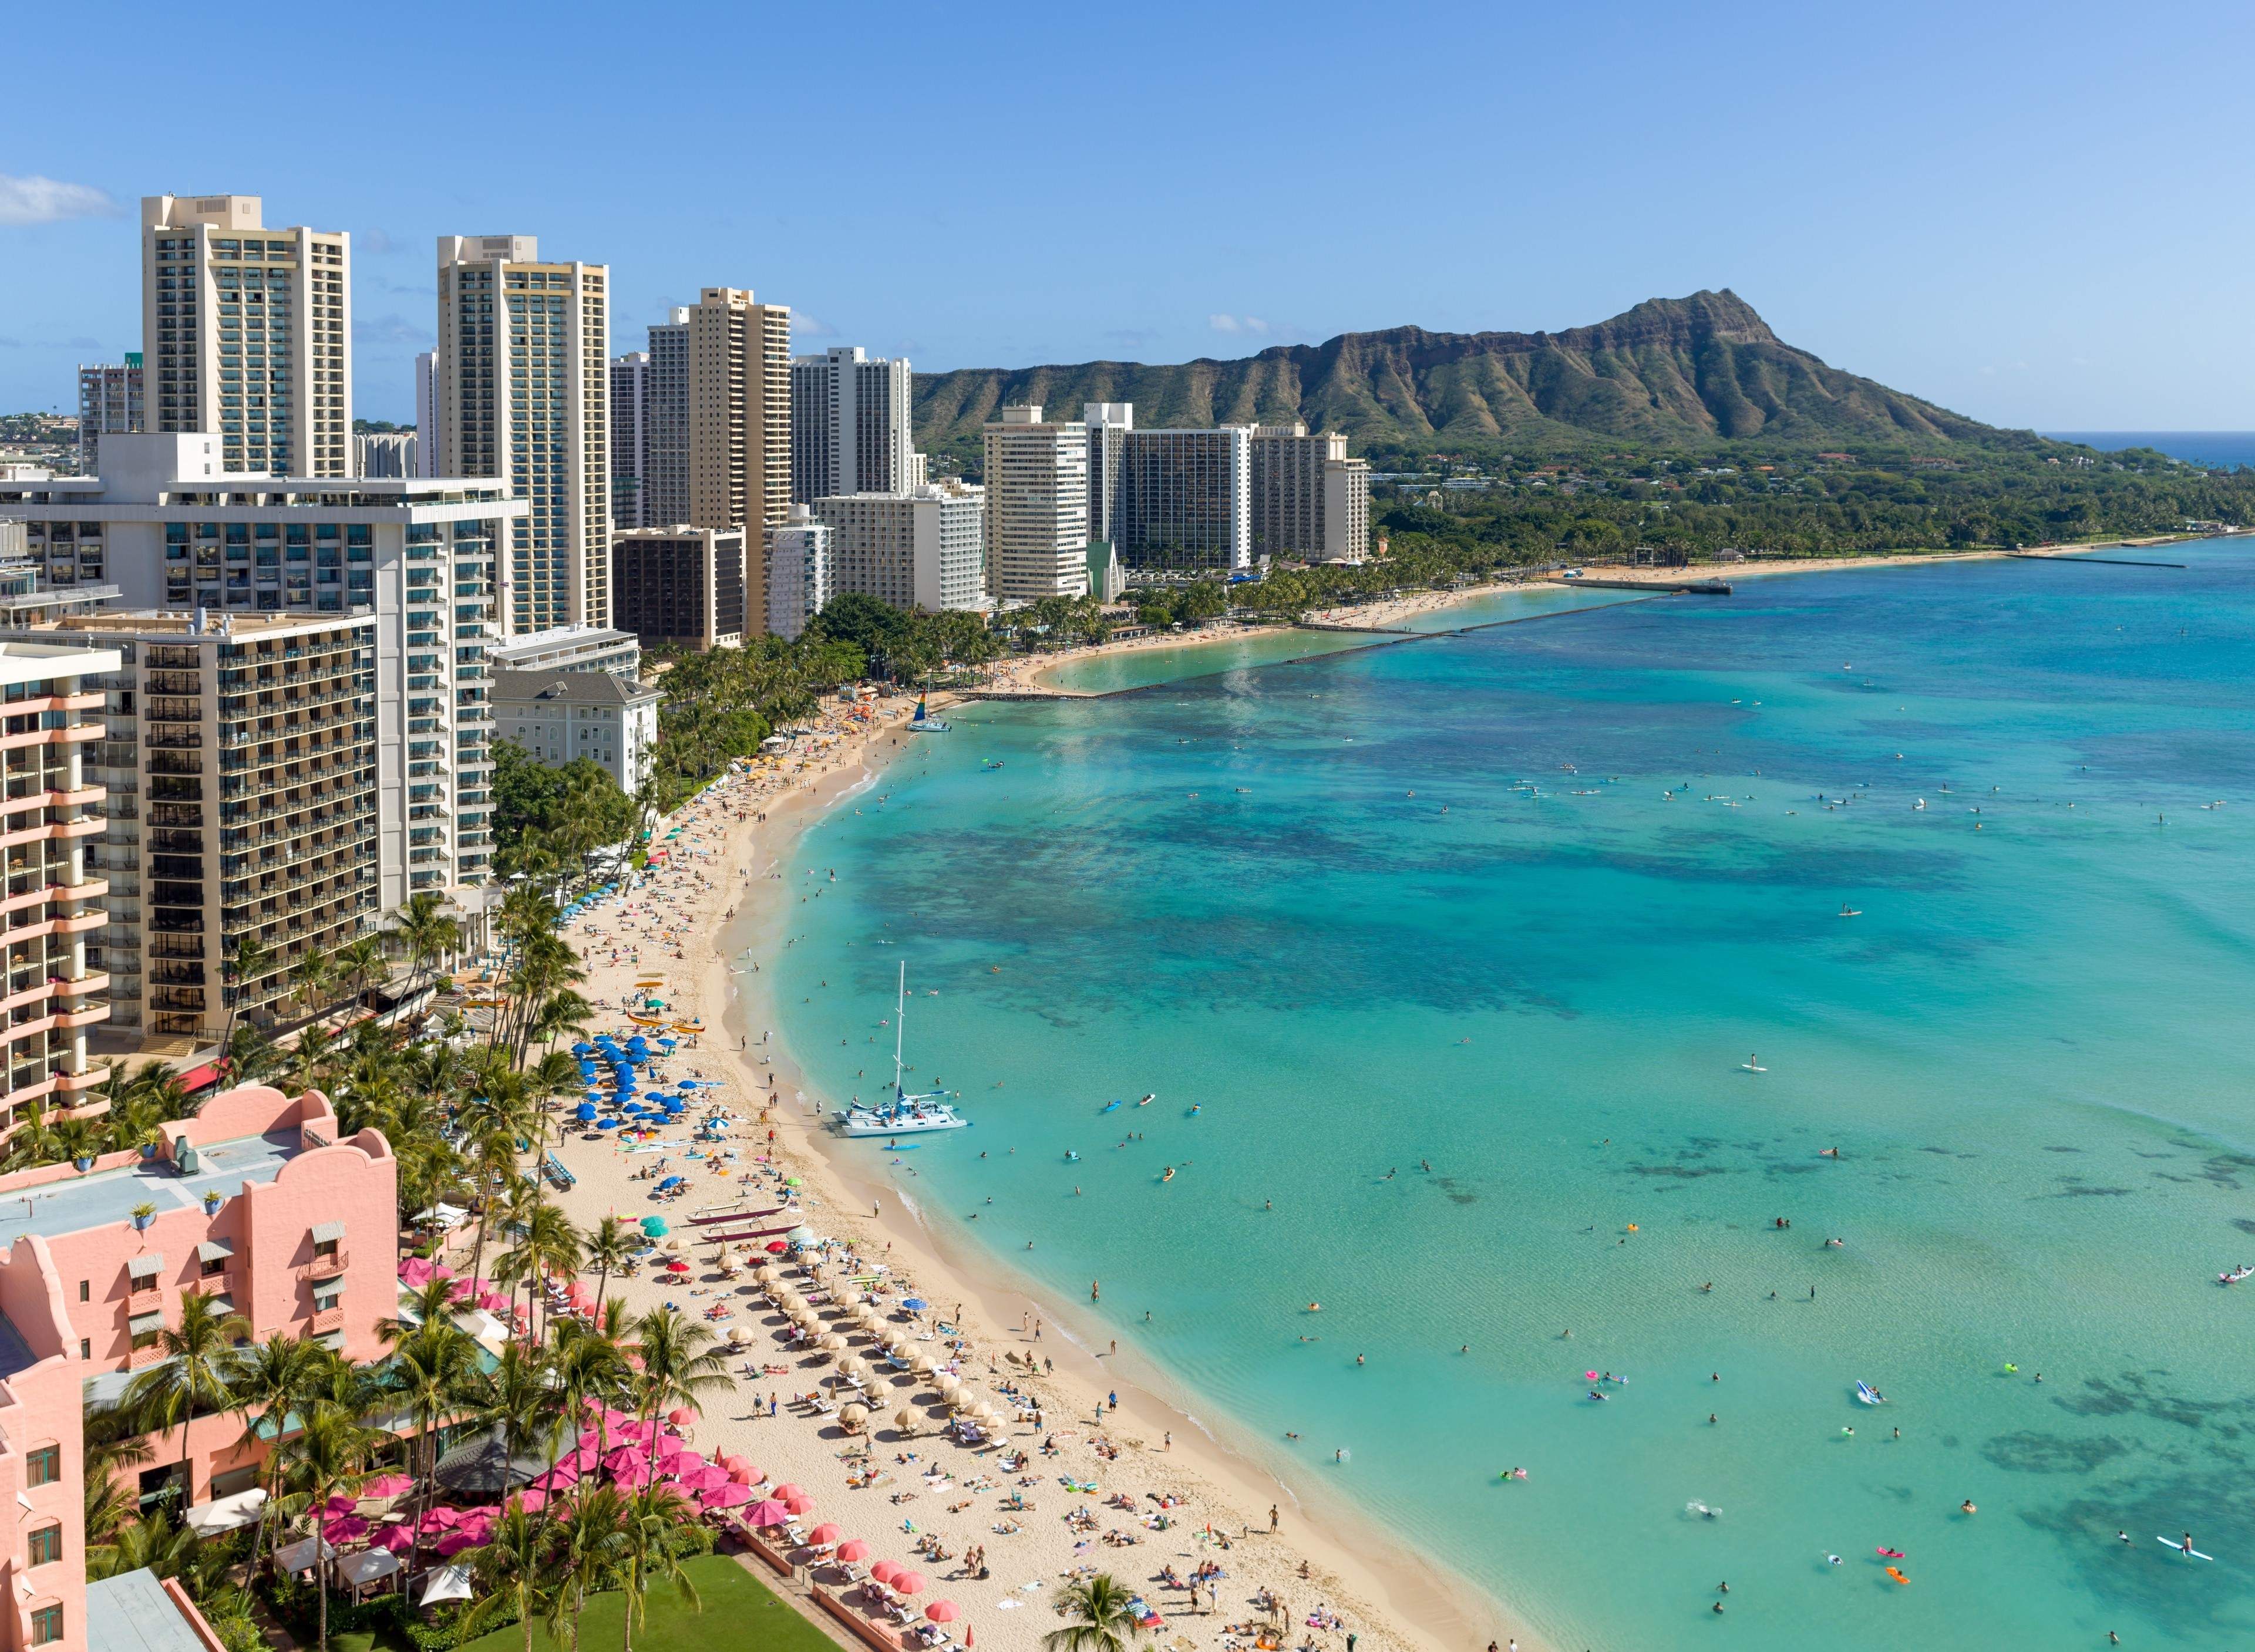 qué-mes-es-más-barato-para-viajar-a-hawaii